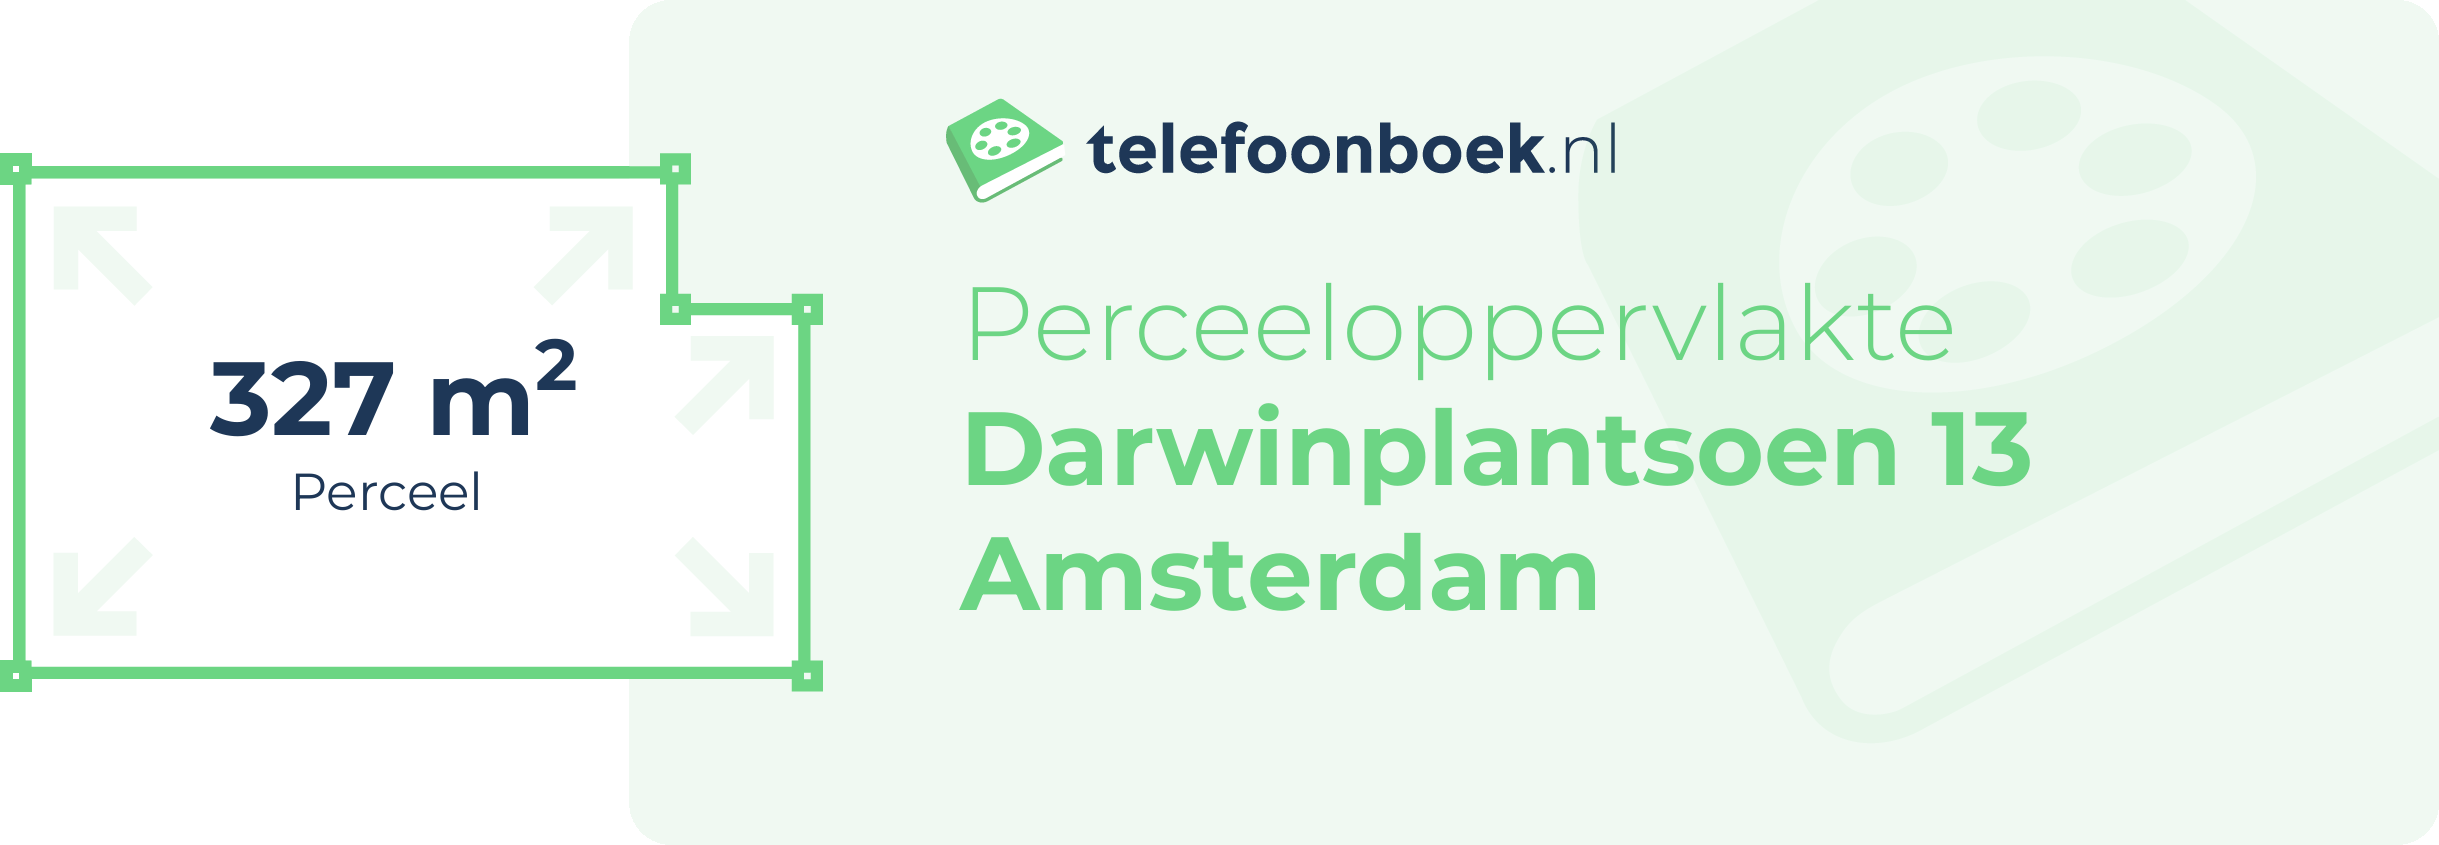 Perceeloppervlakte Darwinplantsoen 13 Amsterdam